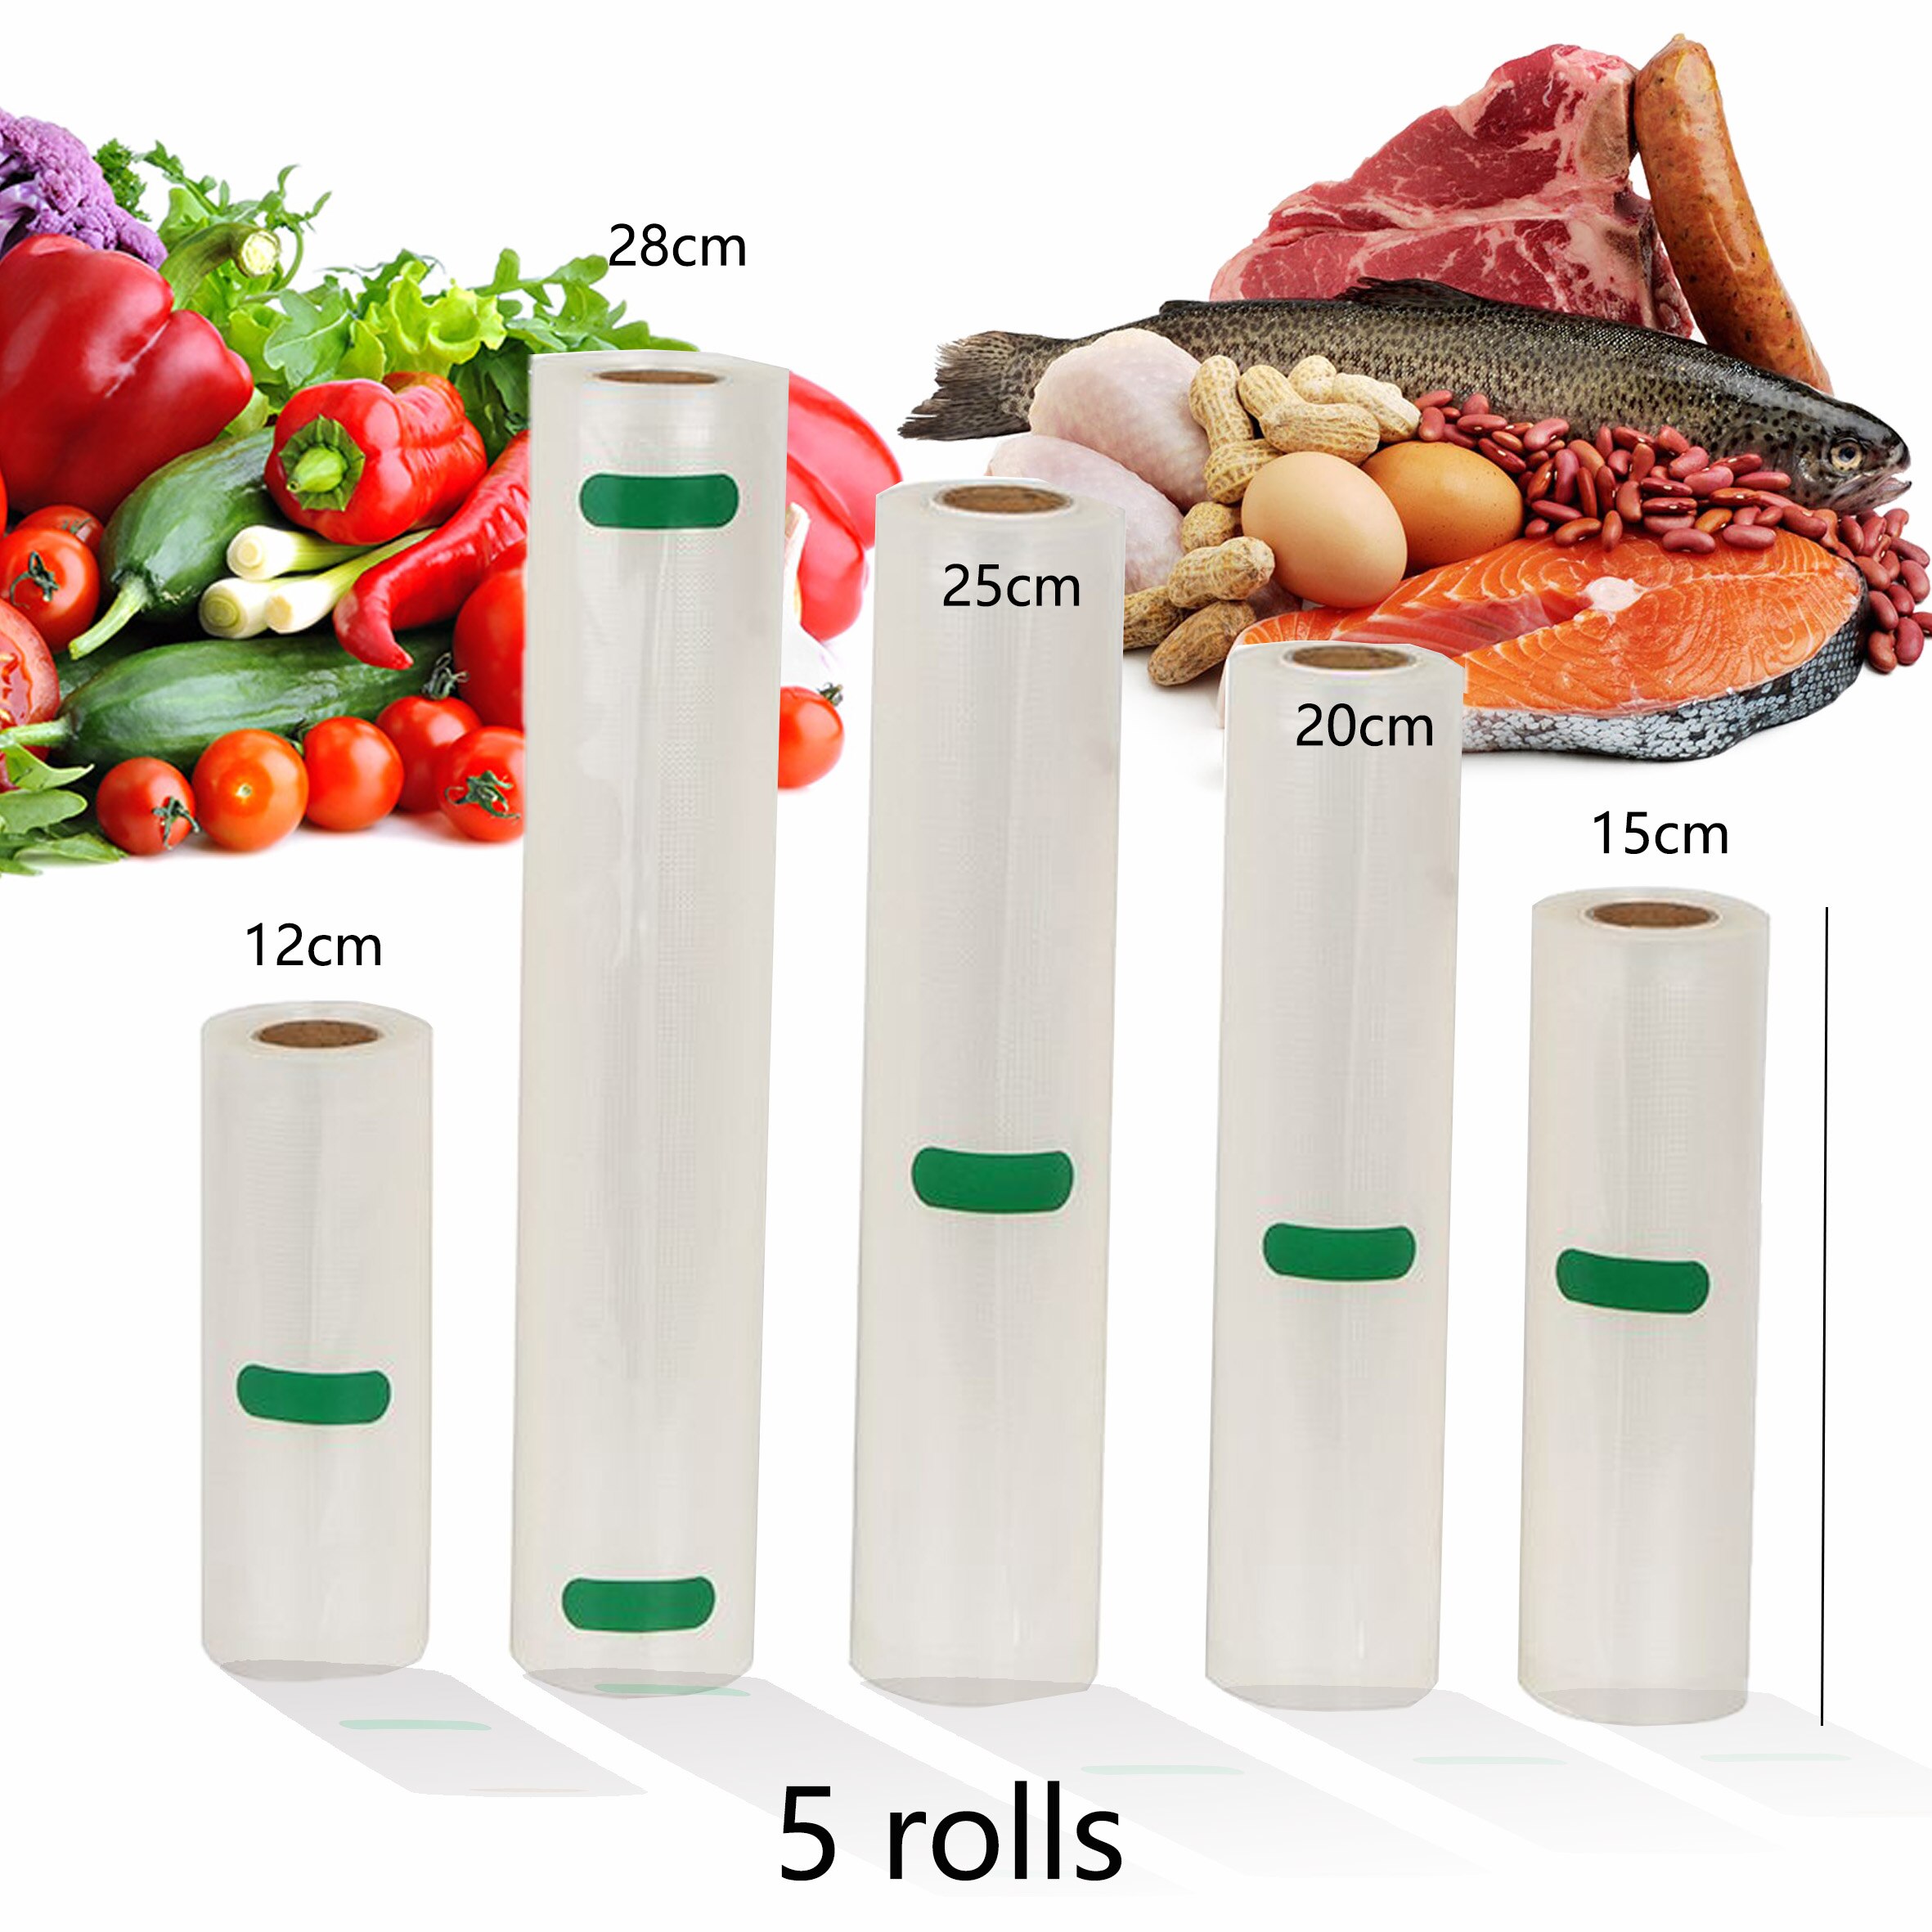 Huishouden Keuken Voedsel Vacuüm Zak Voor Vacuumsealer Opslag Zakken Voor Voedsel Verse Houden 12 + 15 + 20 + 25 + 28 Cm * 500 Cm 5 Rolls/Lot